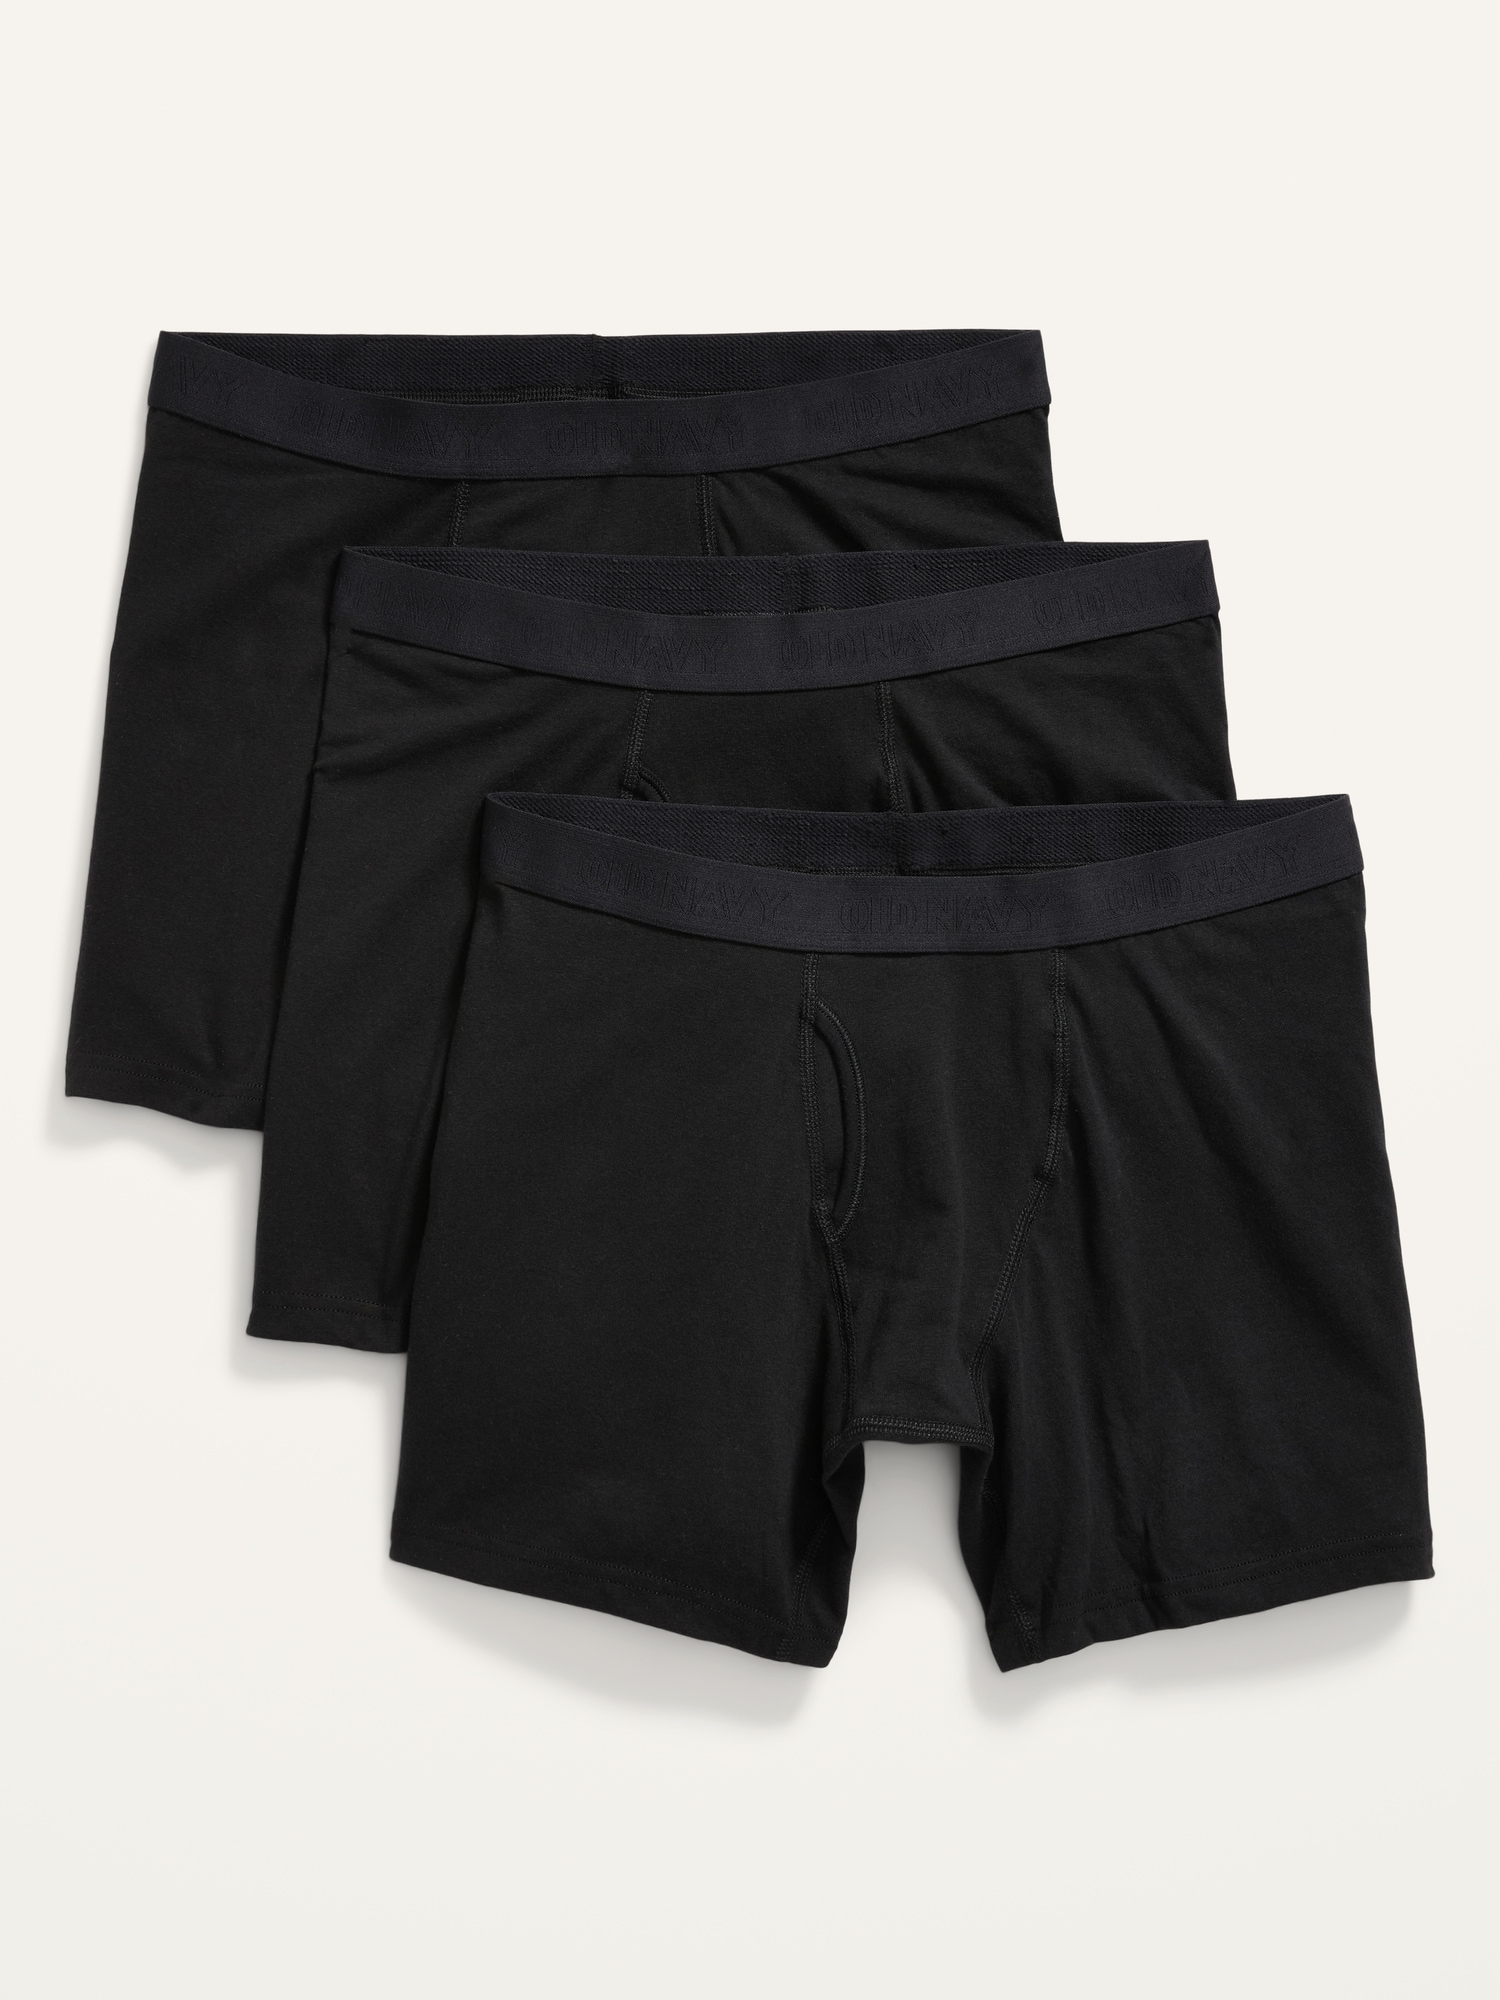 Old Navy Soft-Washed Built-In Flex Boxer Briefs Underwear 3-Pack